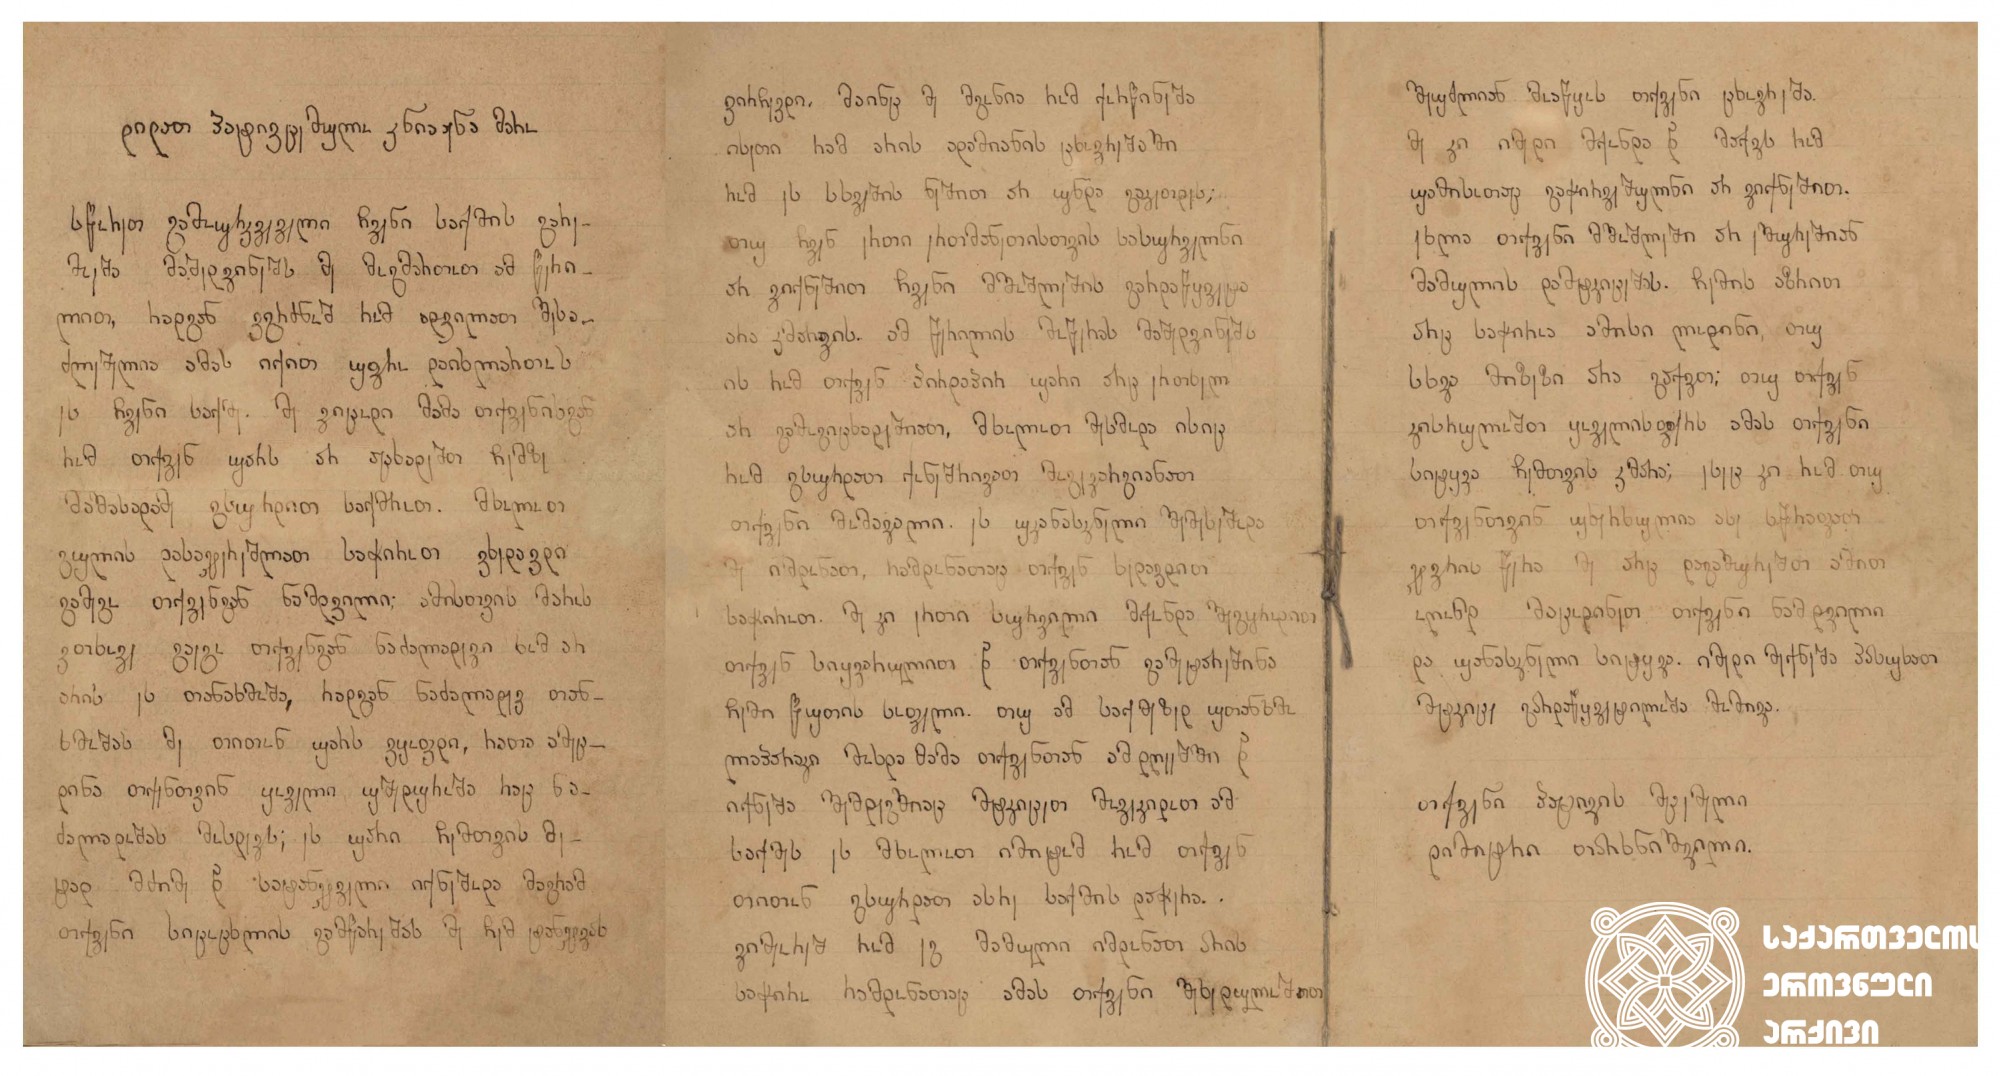 დიმიტრი თარხან-მოურავის კერძო ხასიათის წერილი მომავალ მეუღლეს, მარო თარხნიშვილს <br>
1905 წლის 13 ივლისი